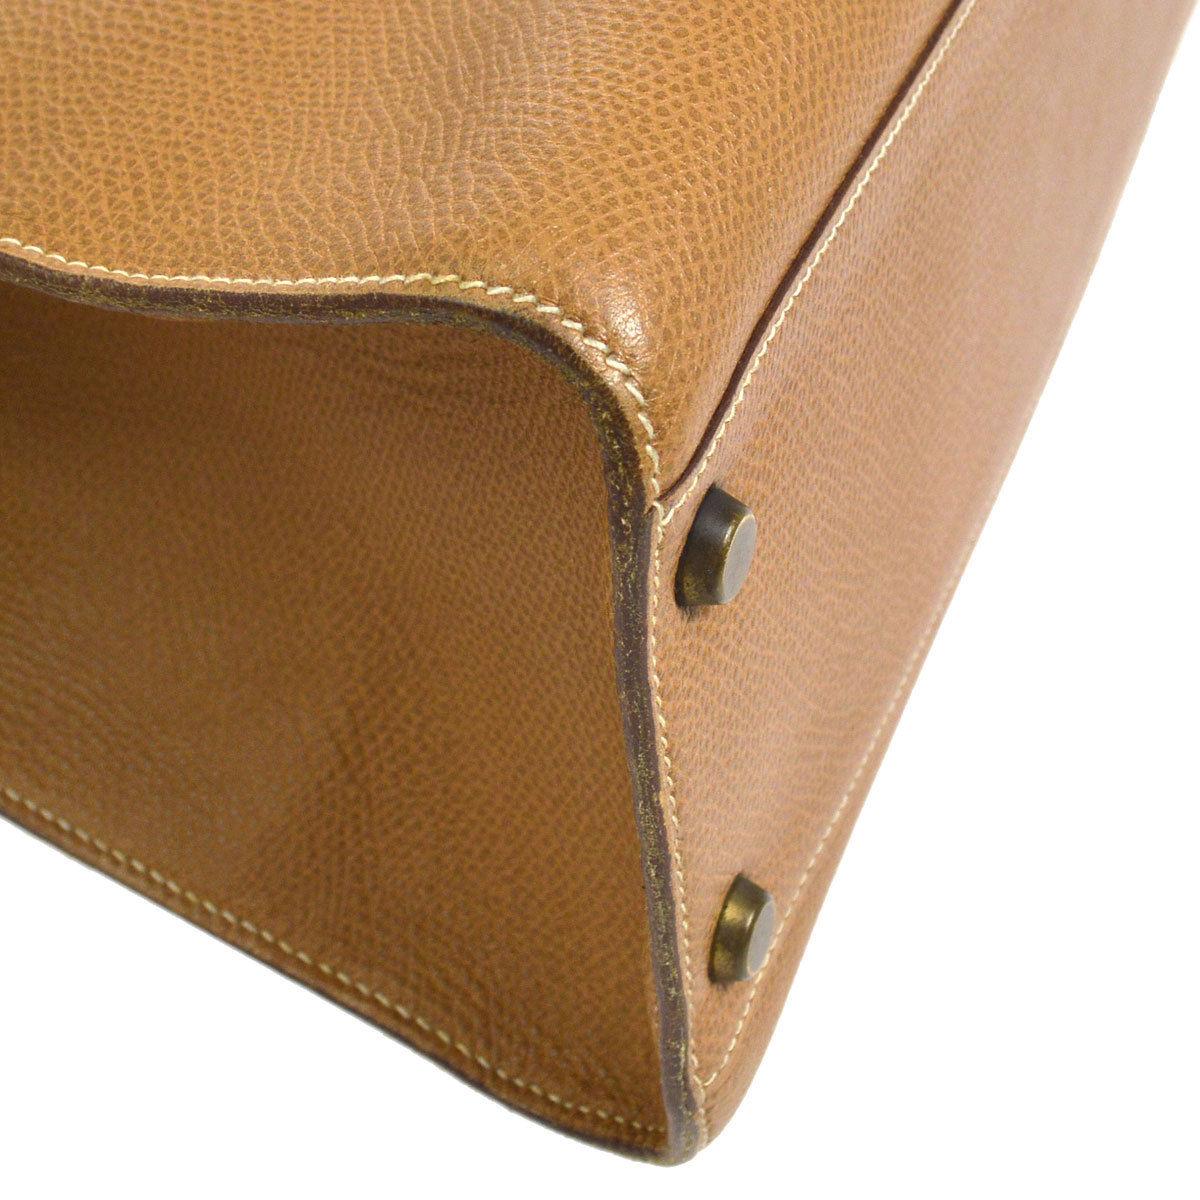 Hermes Cognac Leather Gold Hardware Travel Single Shoulder Large Carryall Bag 1